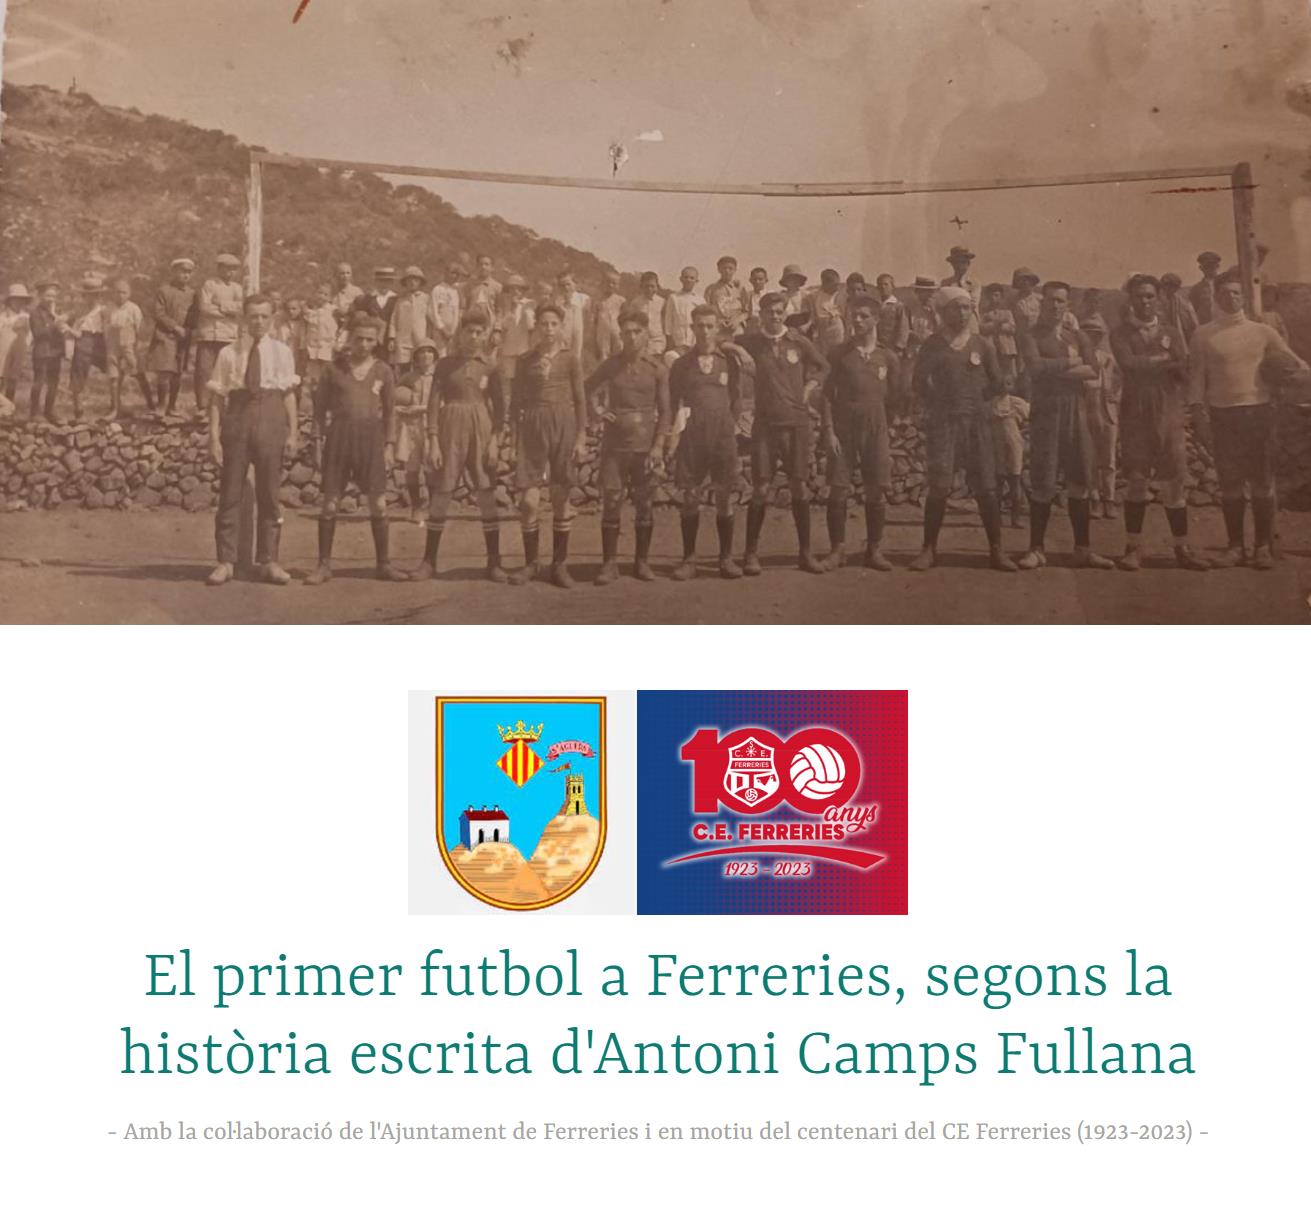 El primer futbol a Ferreries, segons la història escrita d